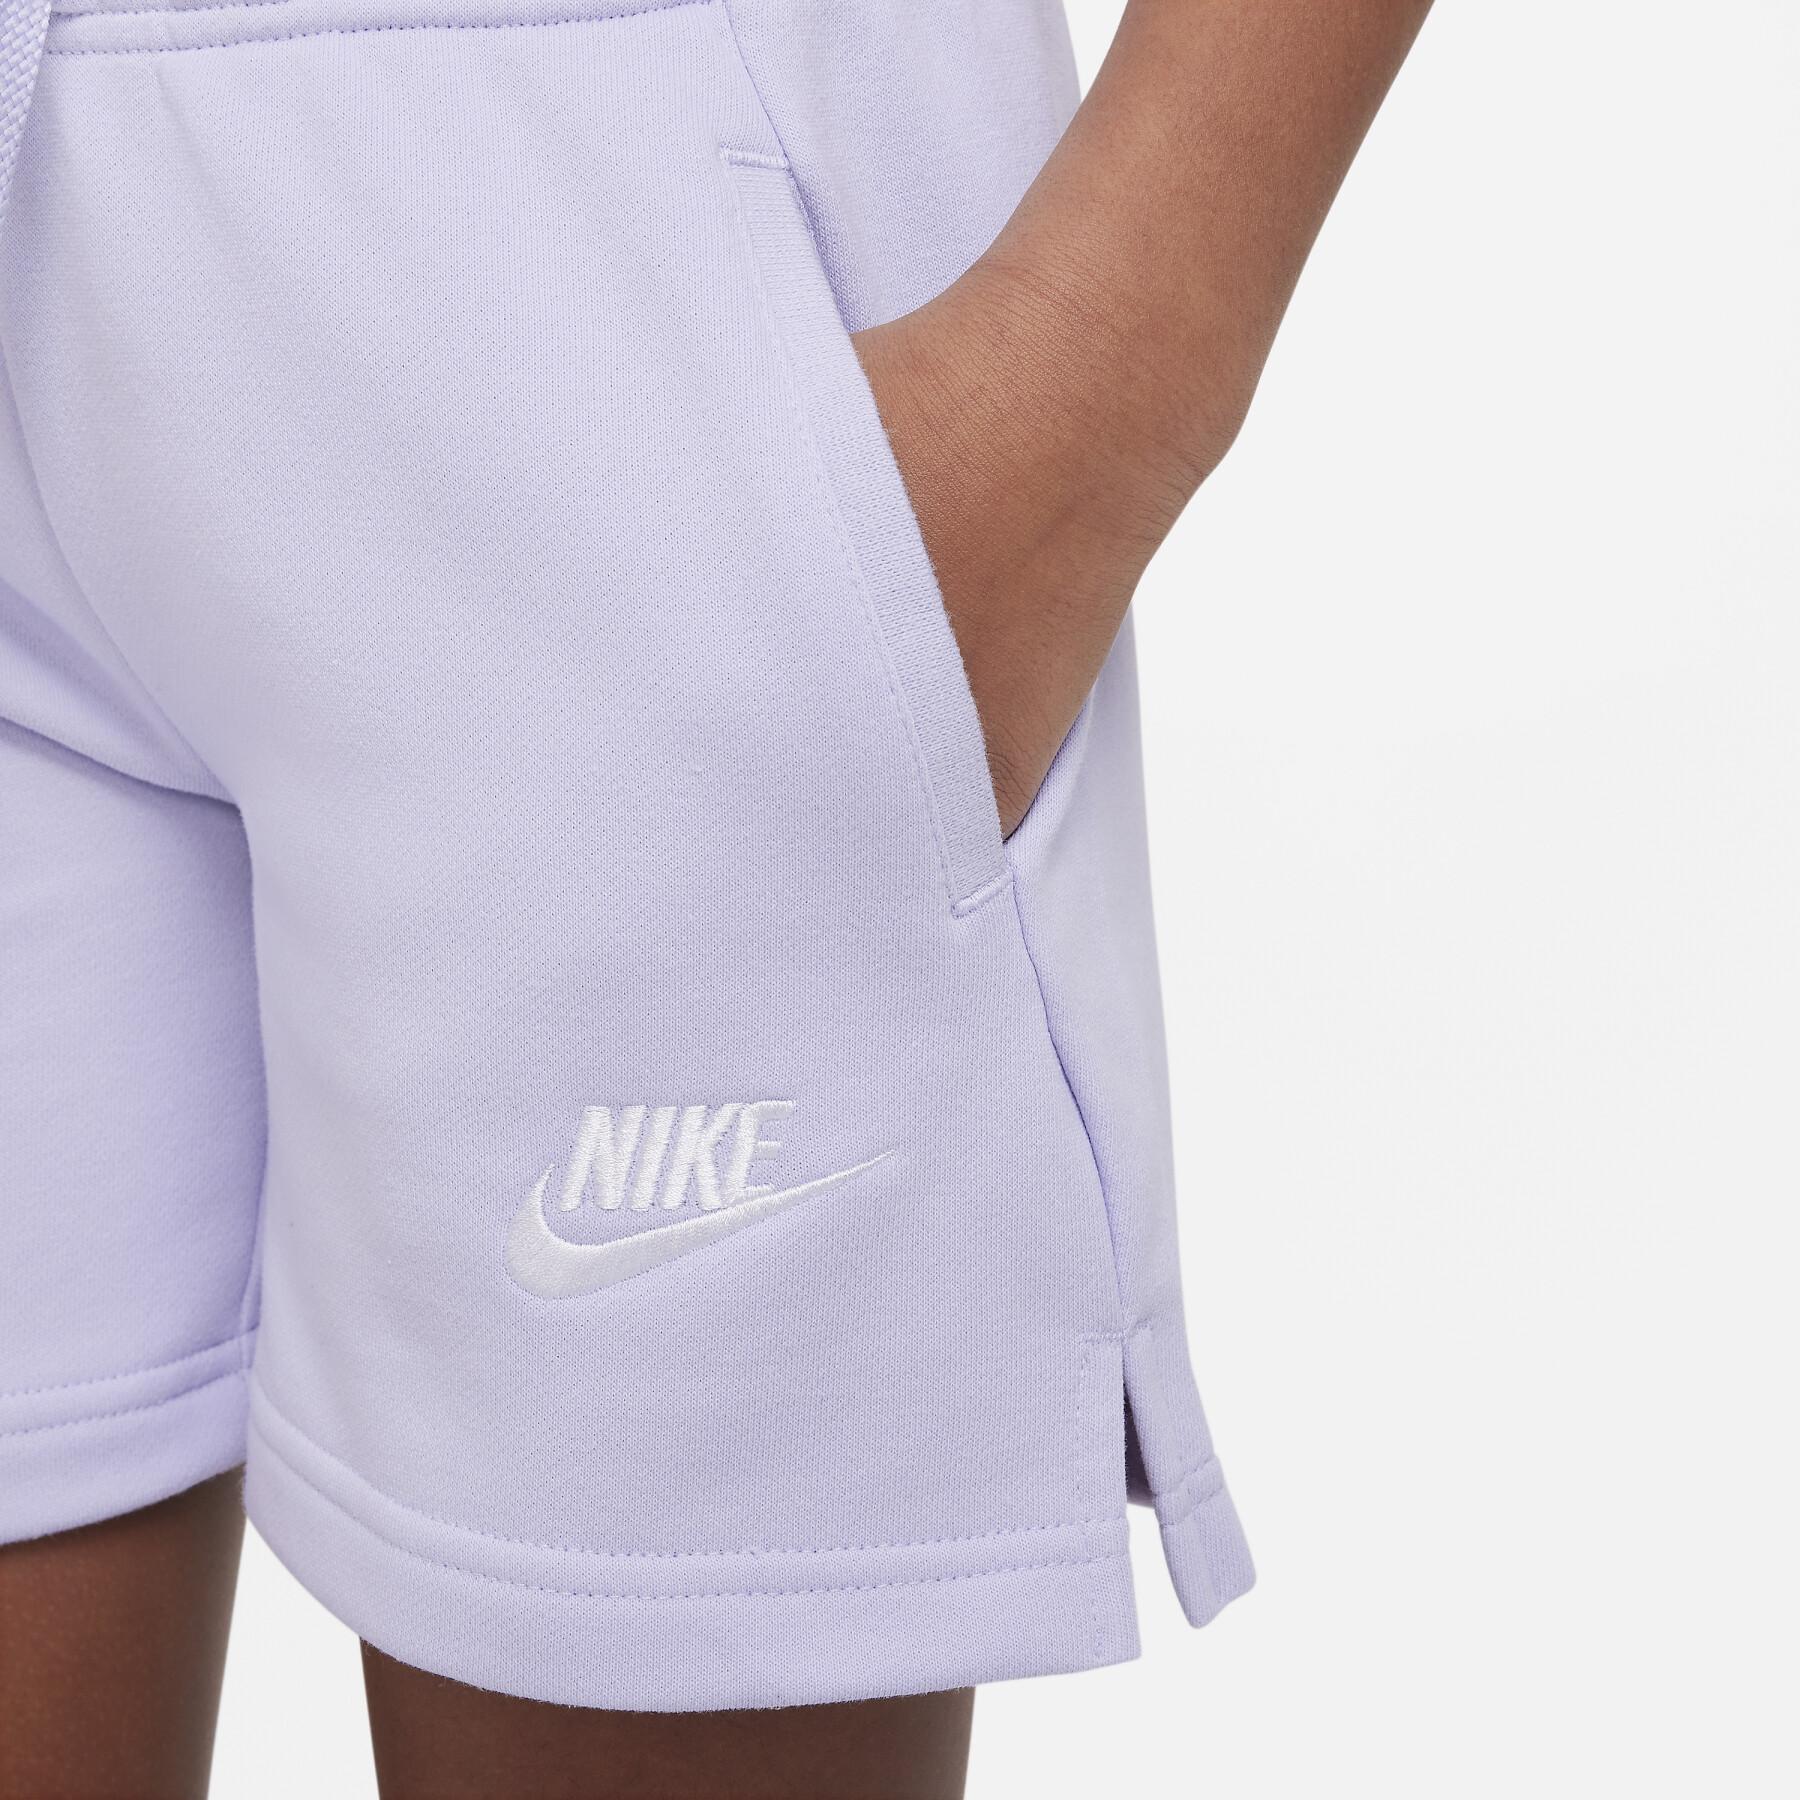 Meisjes shorts Nike Club